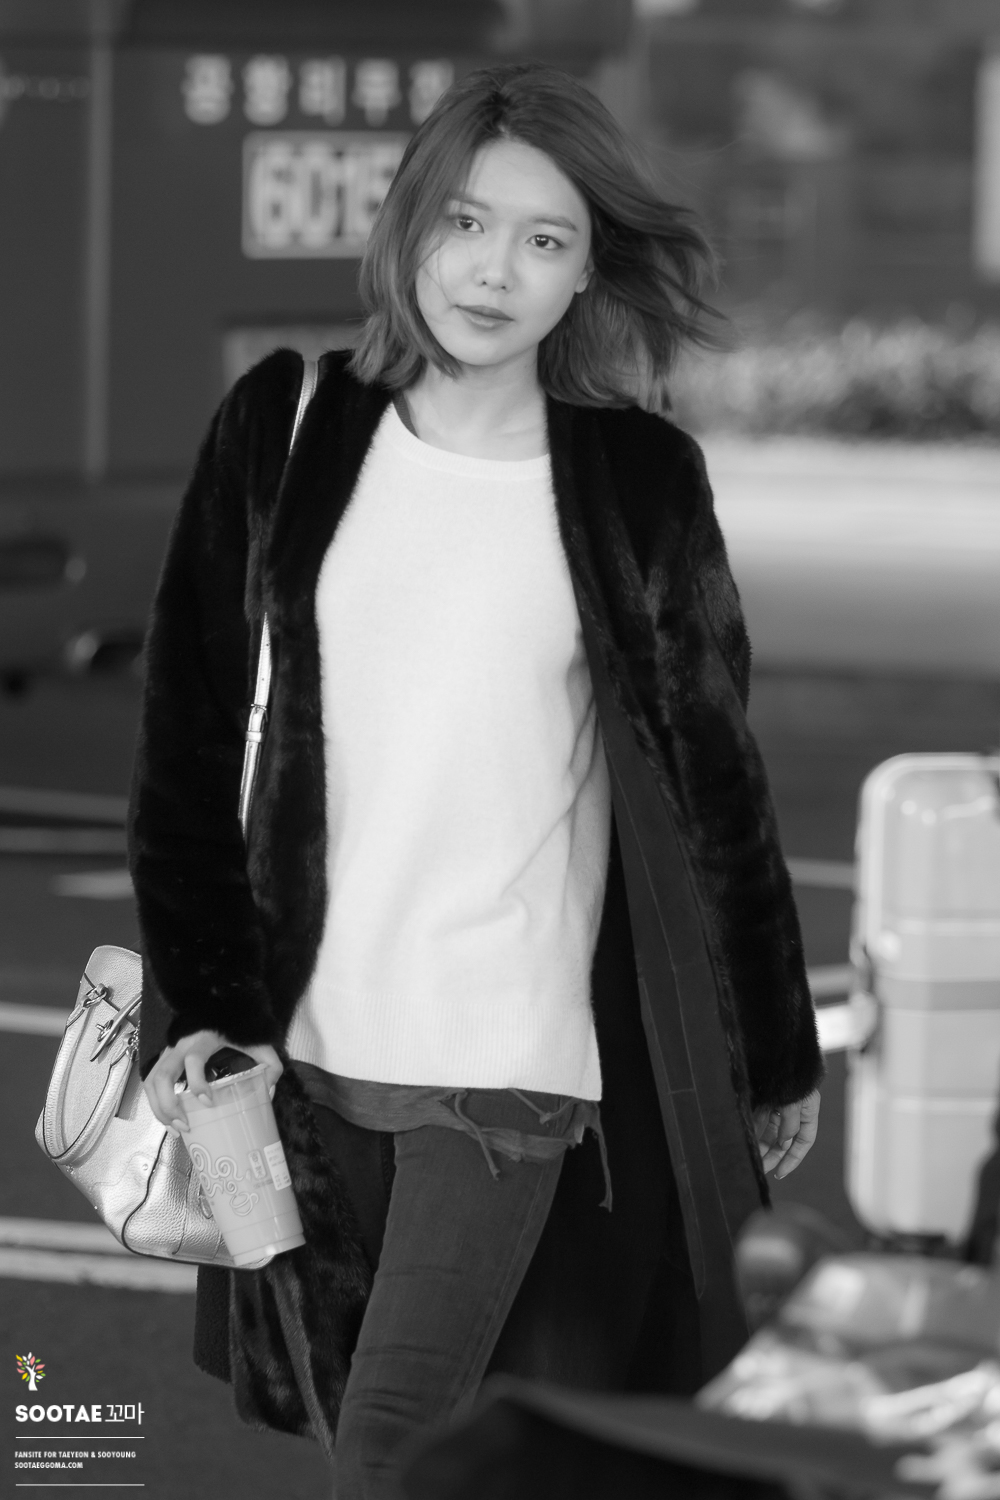 [PIC][12-03-2016]SooYoung trở về Hàn Quốc vào chiều nay 25444761003_4389223cec_o